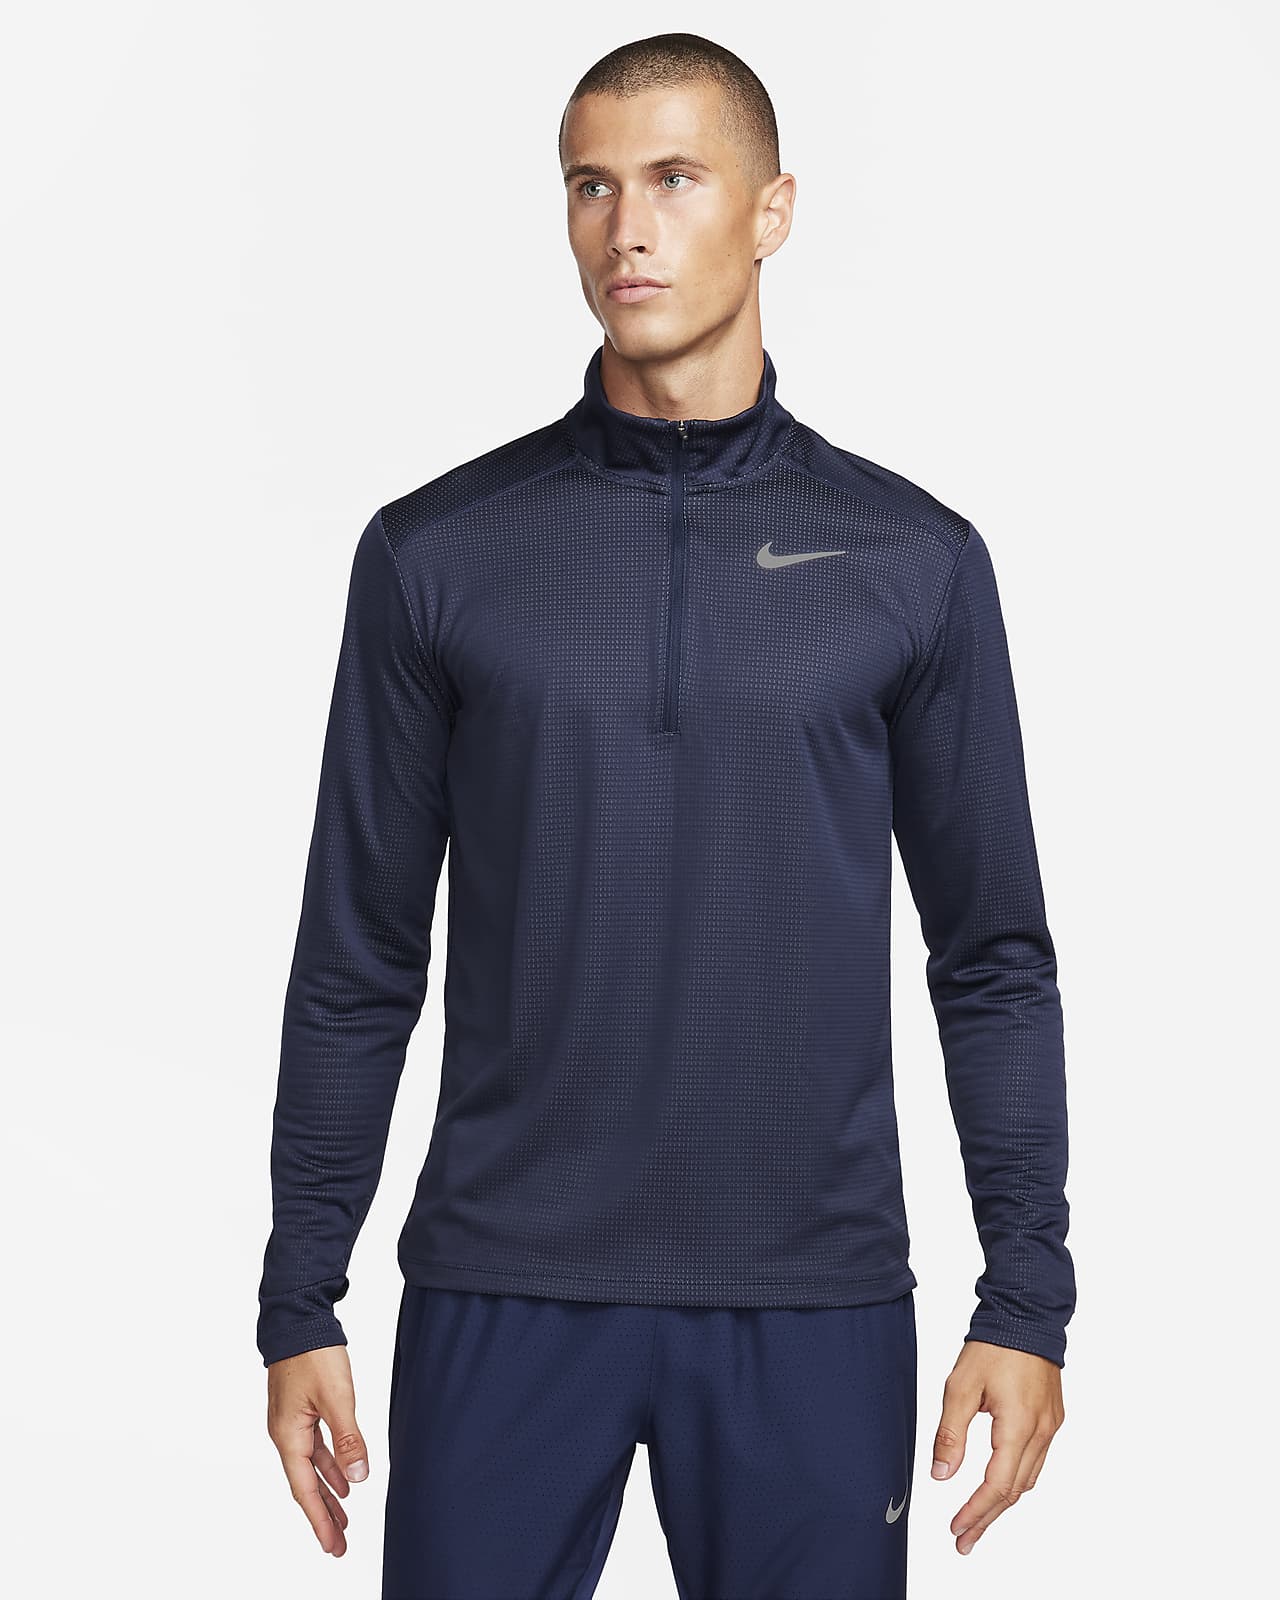 Nike Pacer rövid cipzáras férfi futófelső